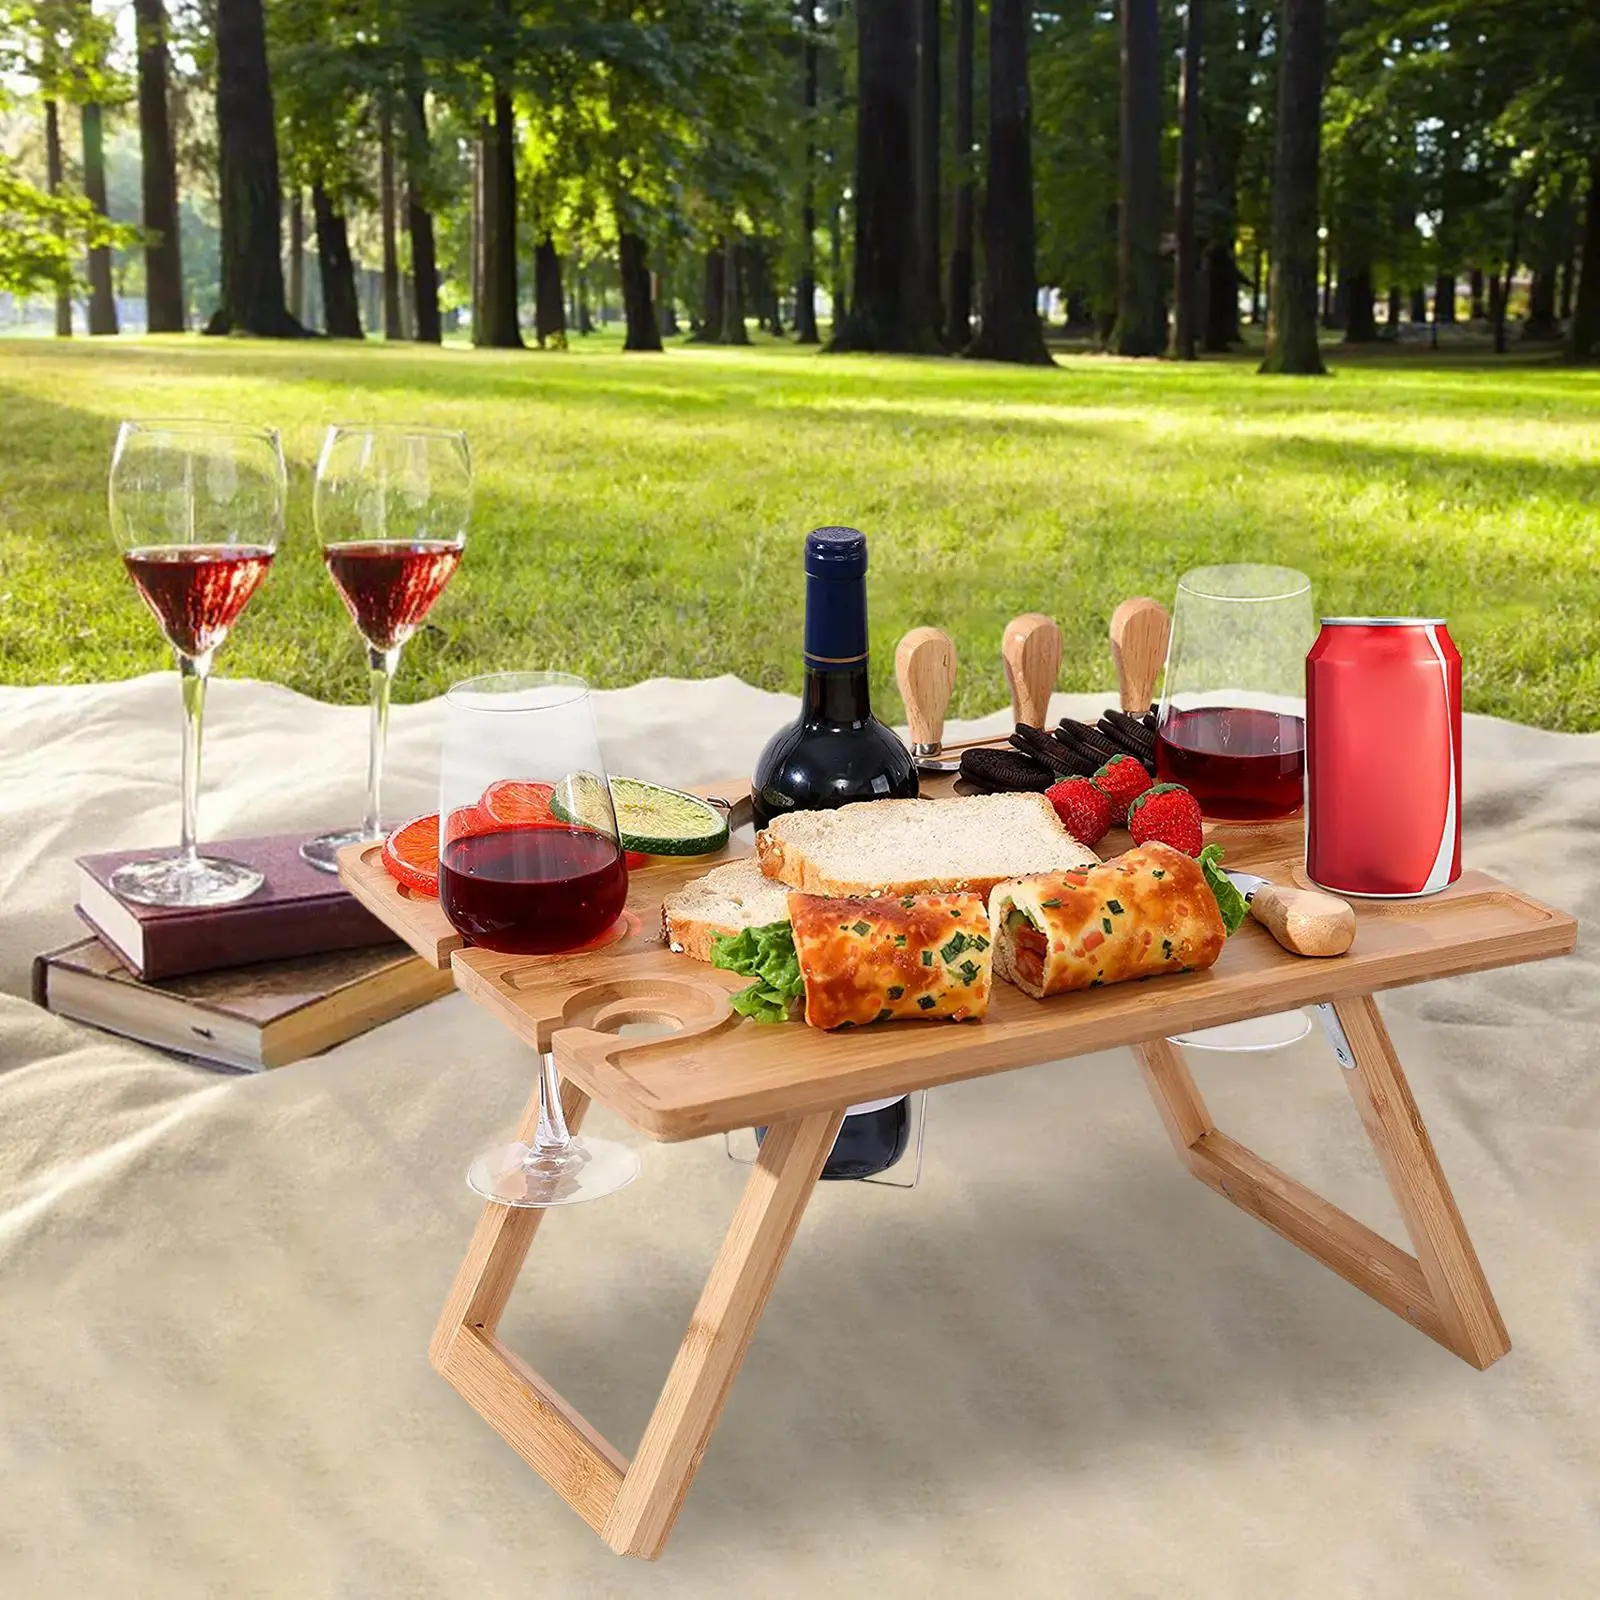 Outdoor Folding Picnic Table Portable Wooden Wine Table Wine Glass Rack Outdoor Food Wine Table for Garden Travel Beach Picnic